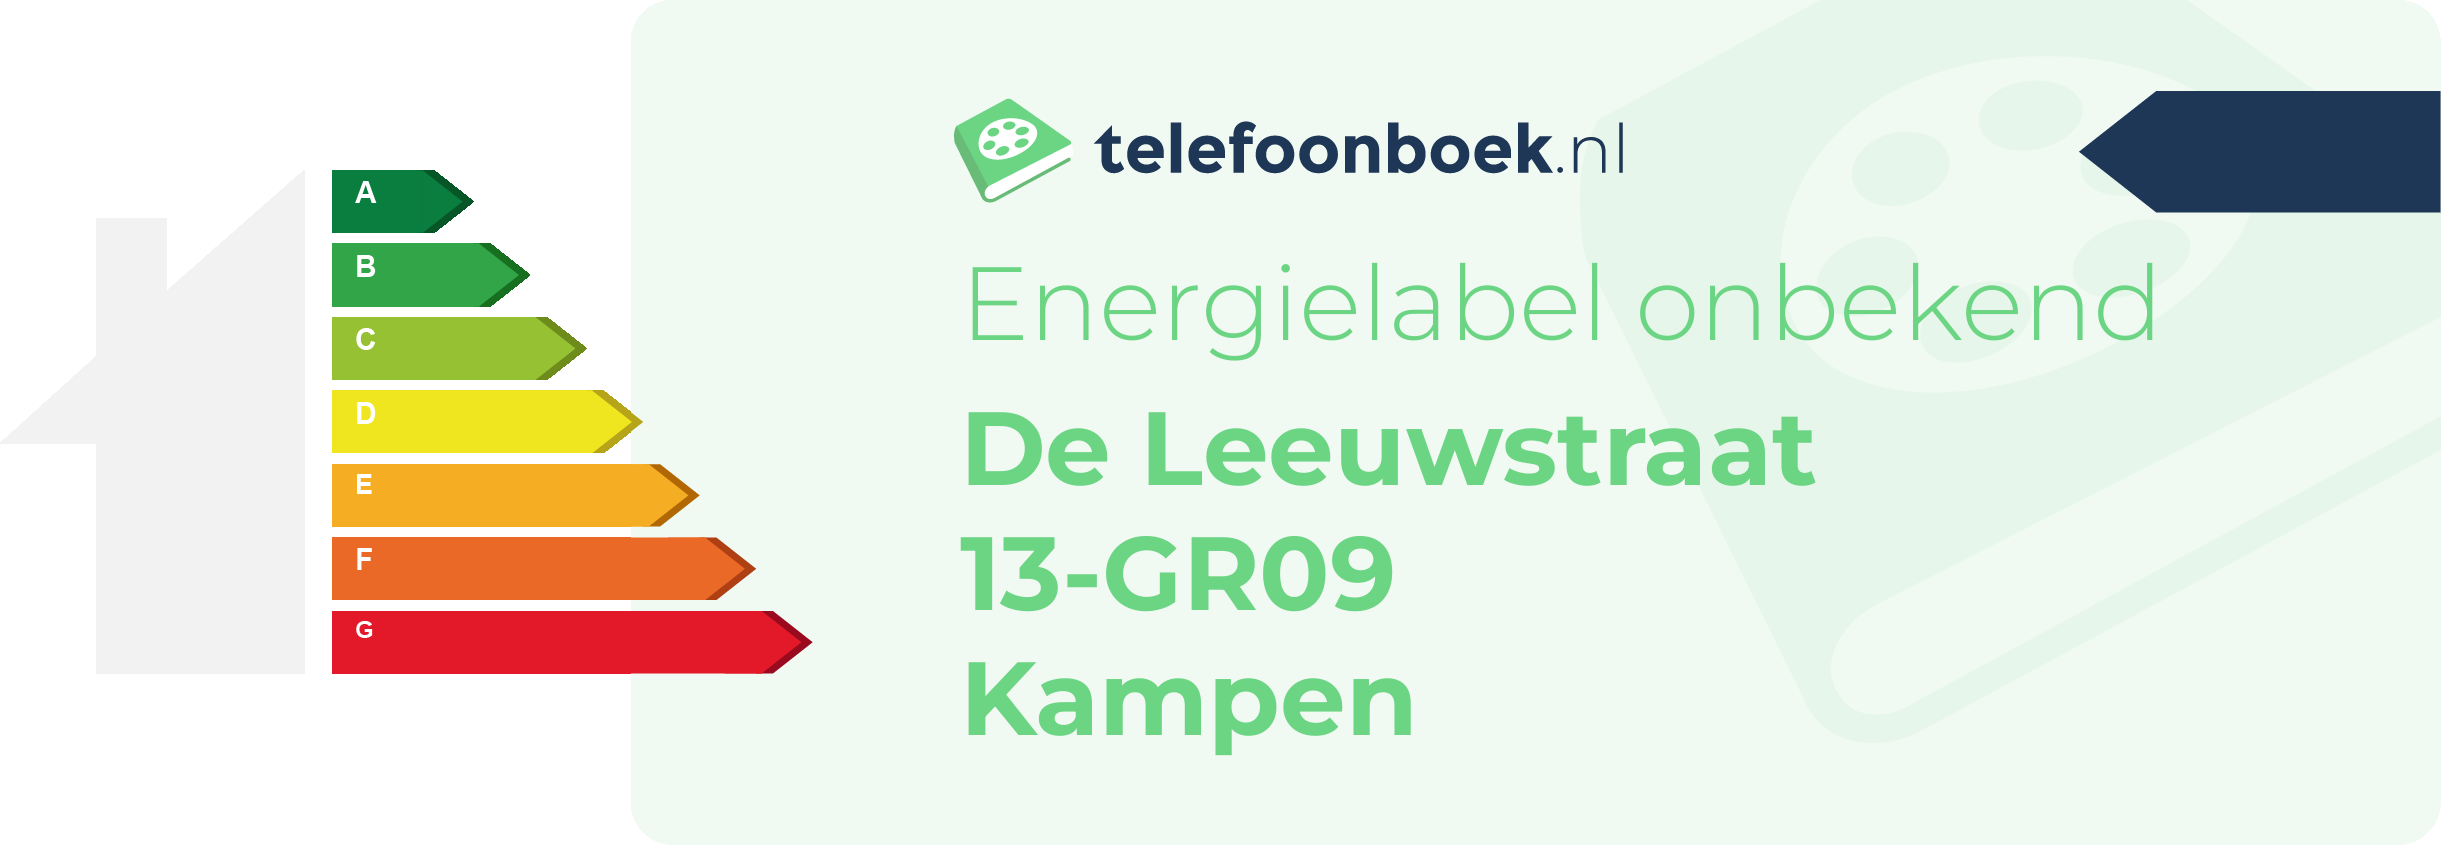 Energielabel De Leeuwstraat 13-GR09 Kampen